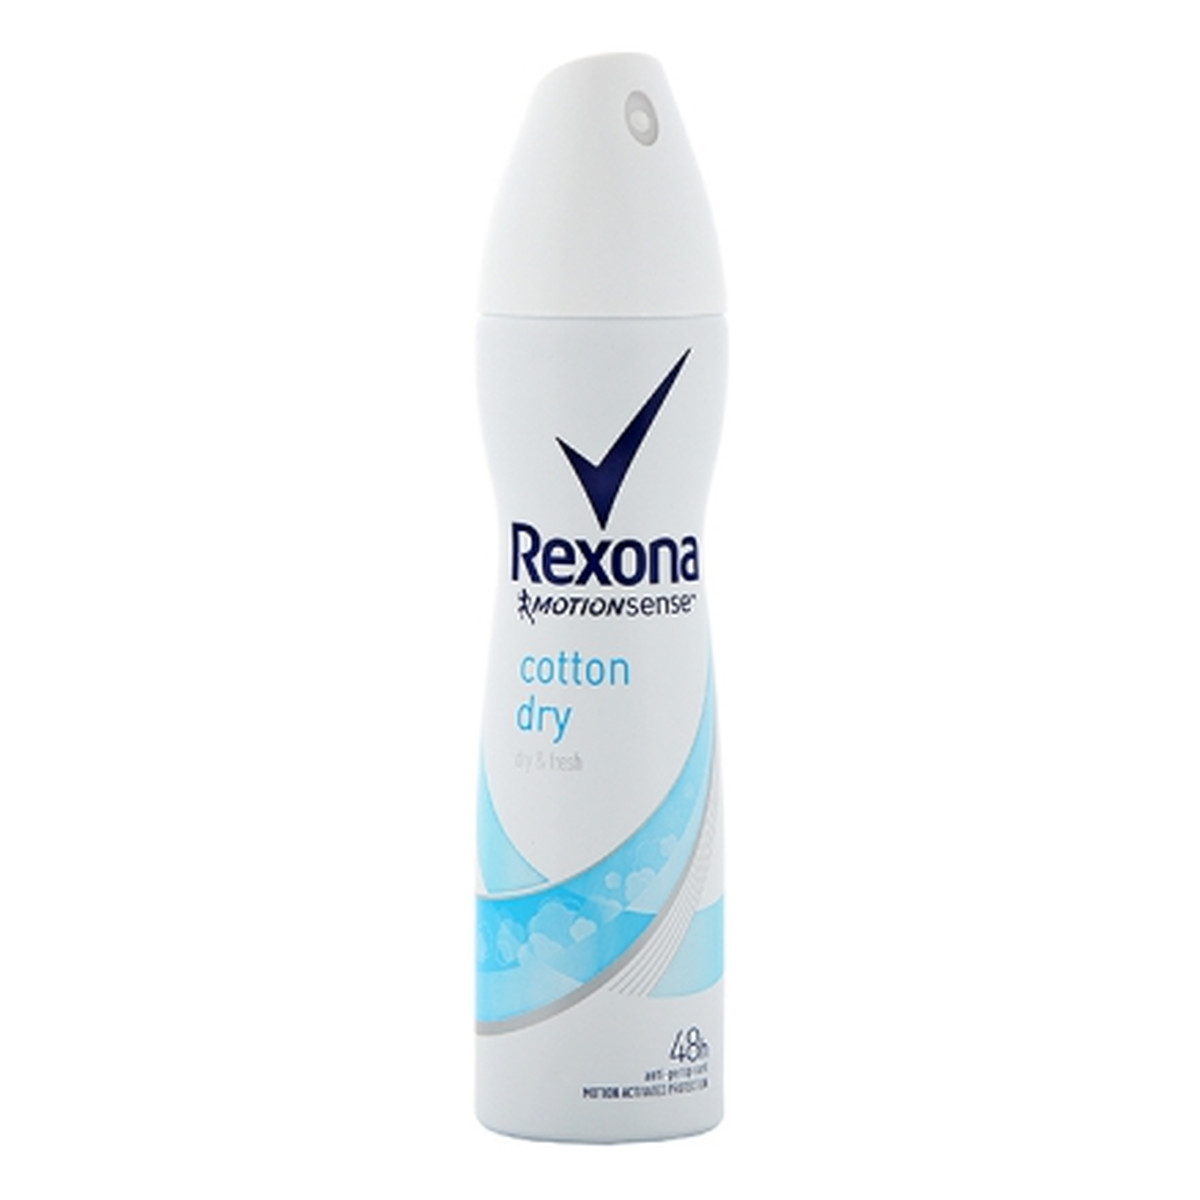 Rexona Motion Sense Woman dezodorant spray Cotton Dry 150ml